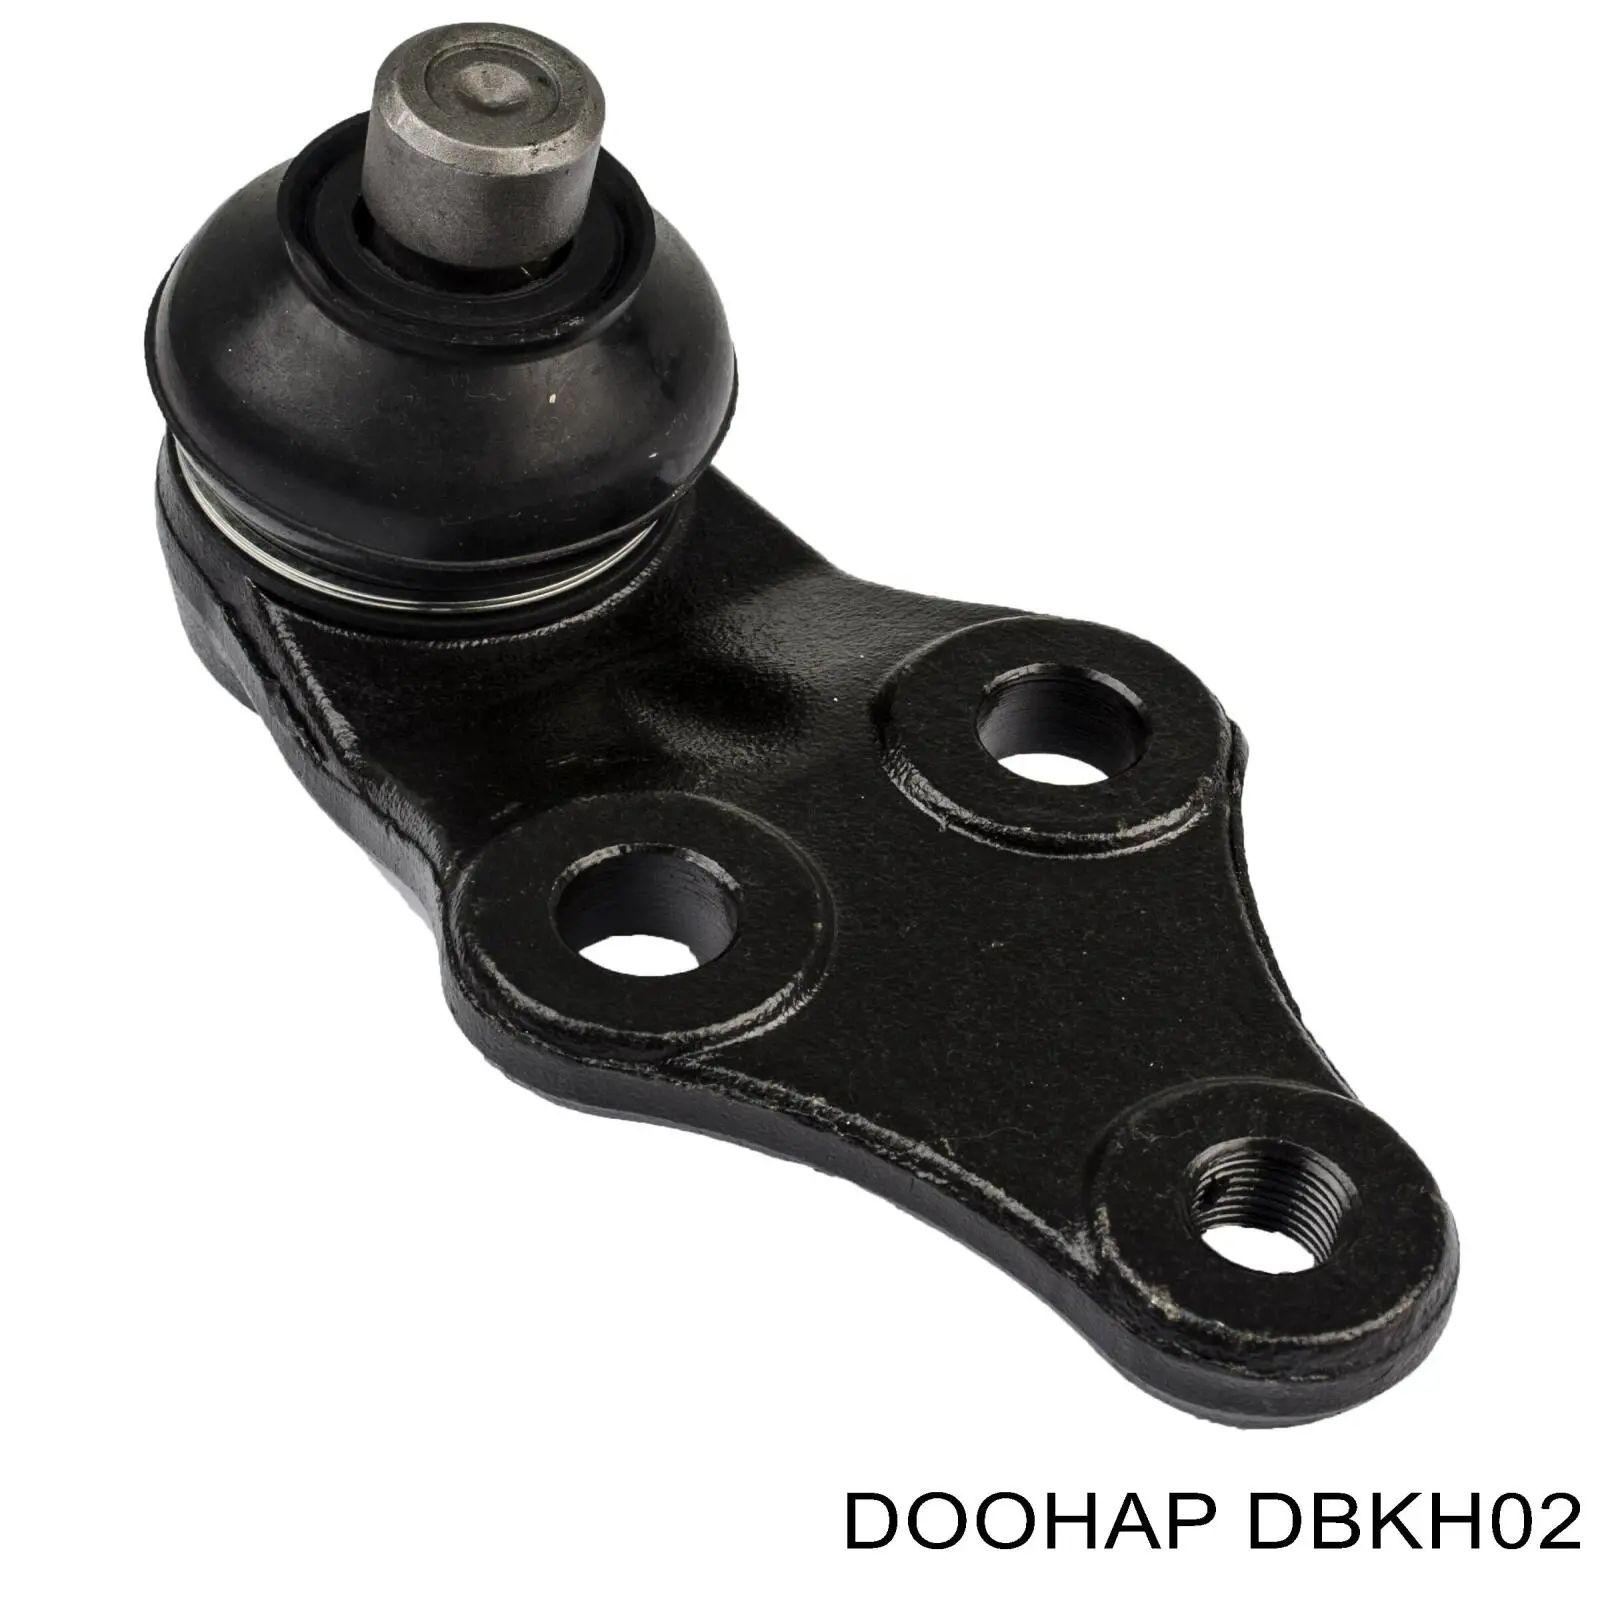 DBKH02 Doohap rótula de suspensión inferior